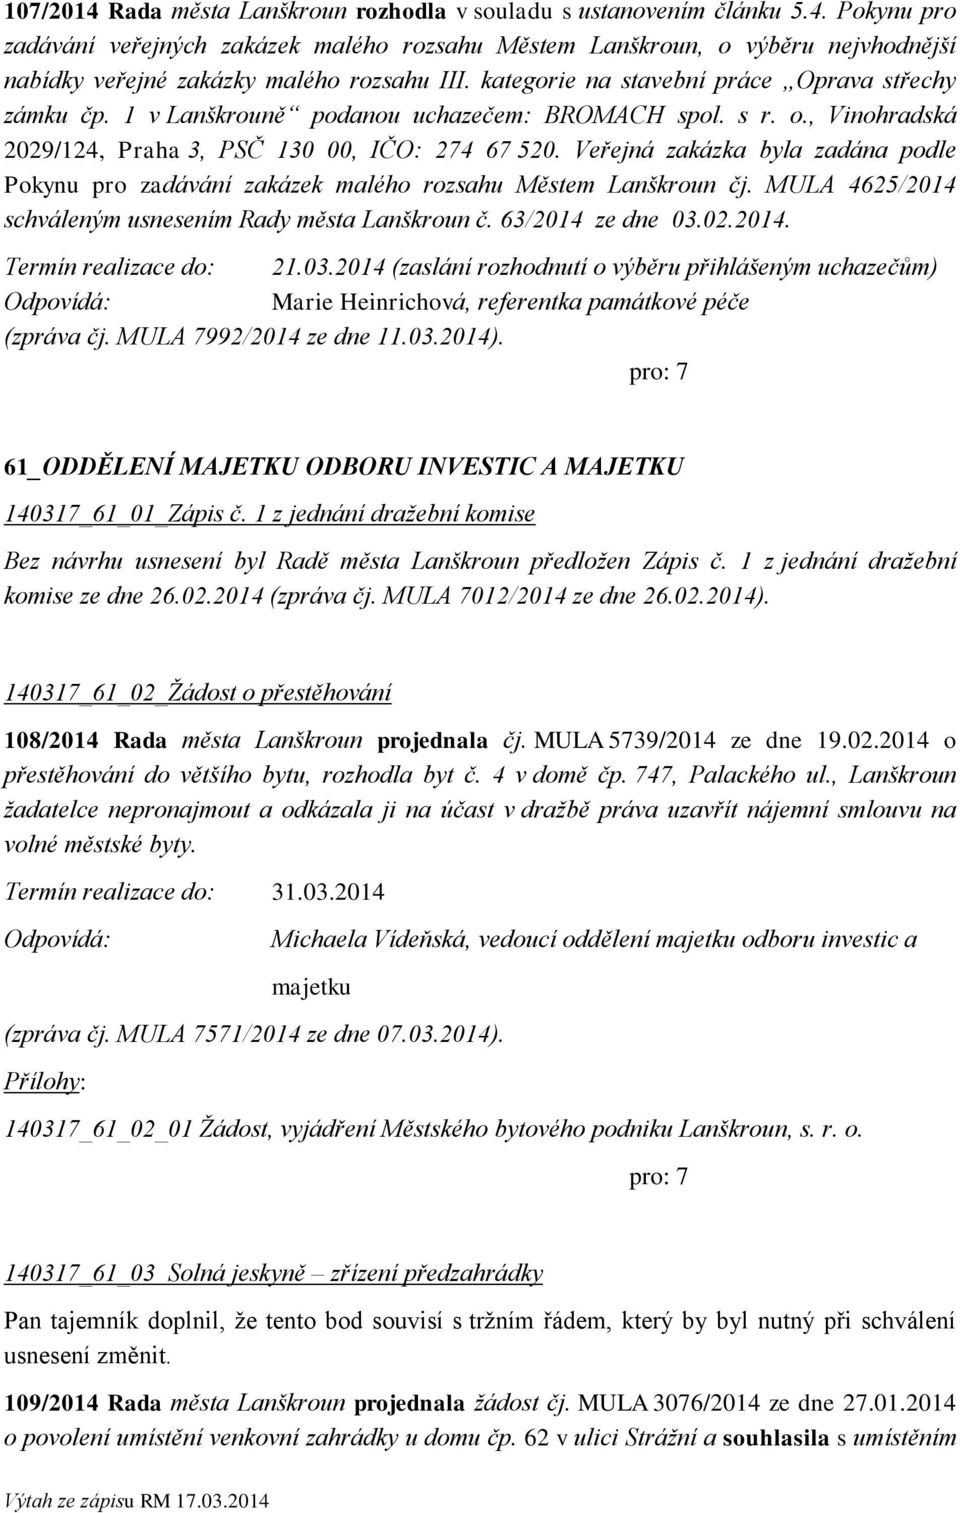 Veřejná zakázka byla zadána podle Pokynu pro zadávání zakázek malého rozsahu Městem Lanškroun čj. MULA 4625/2014 schváleným usnesením Rady města Lanškroun č. 63/2014 ze dne 03.02.2014. Termín realizace do: 21.